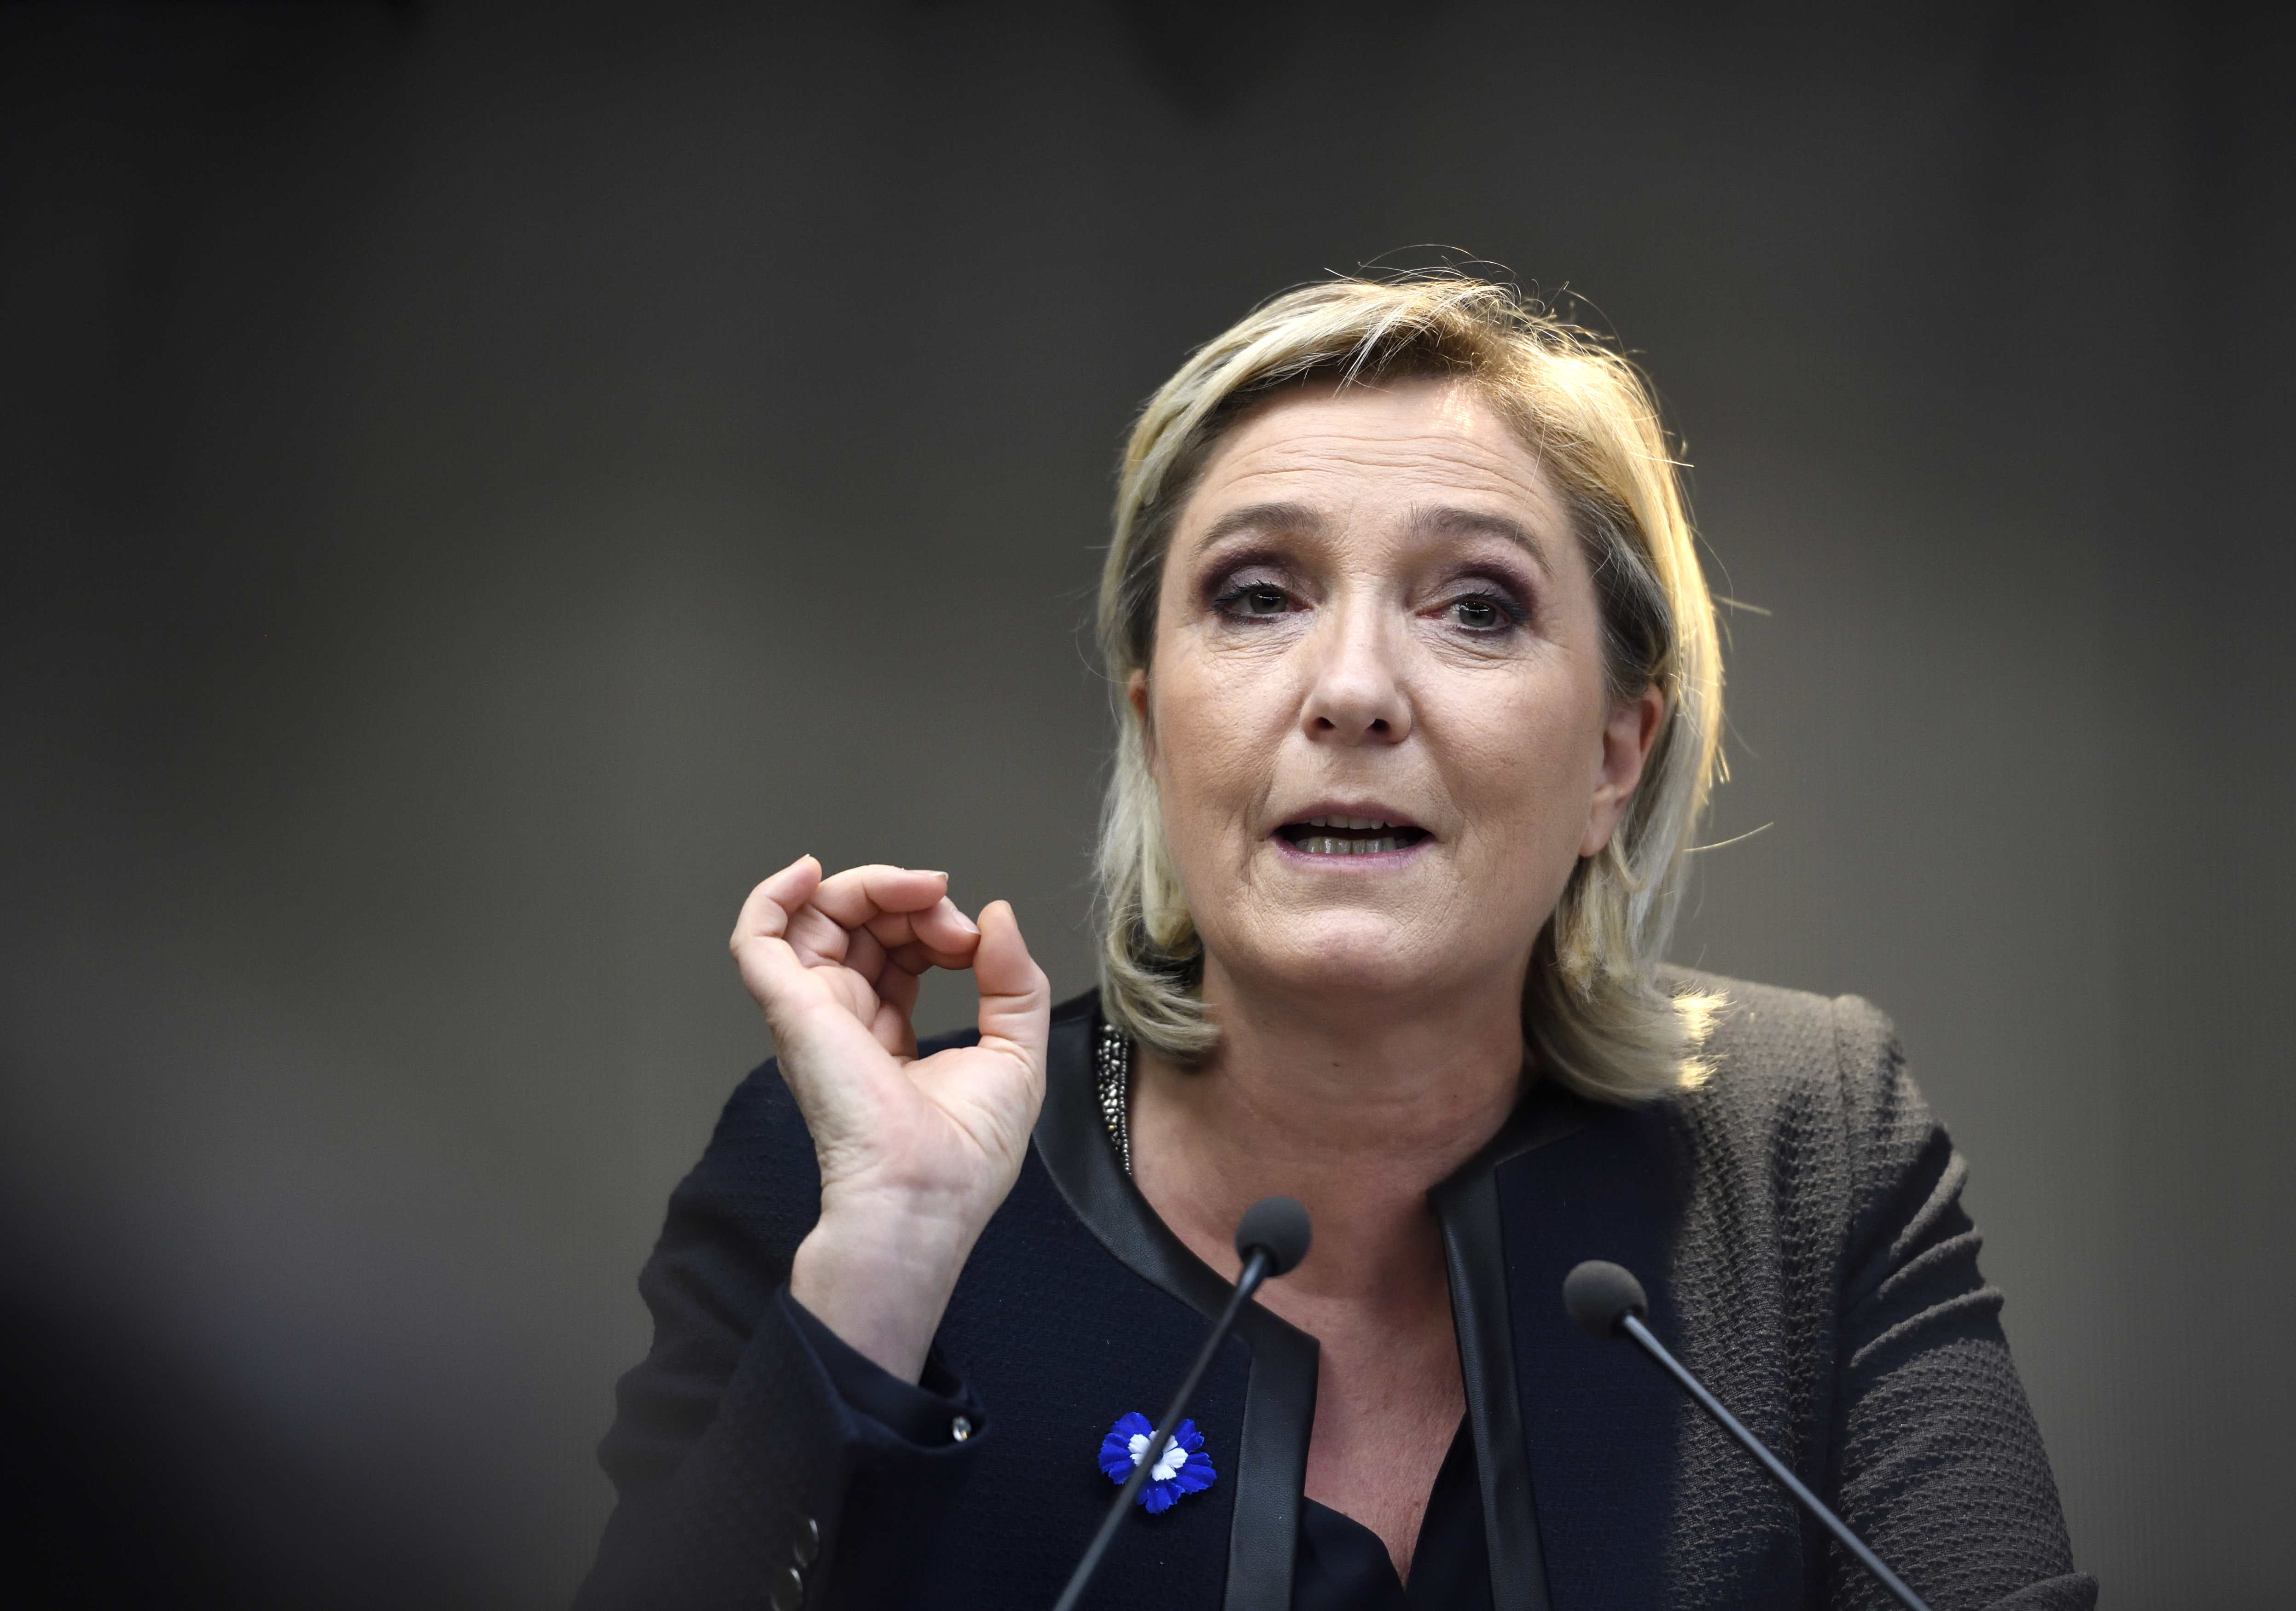 Marine Le Pen azért örül Trump győzelmének, mert ezzel az ő esélyei is javultak arra, hogy francia elnök lehessen